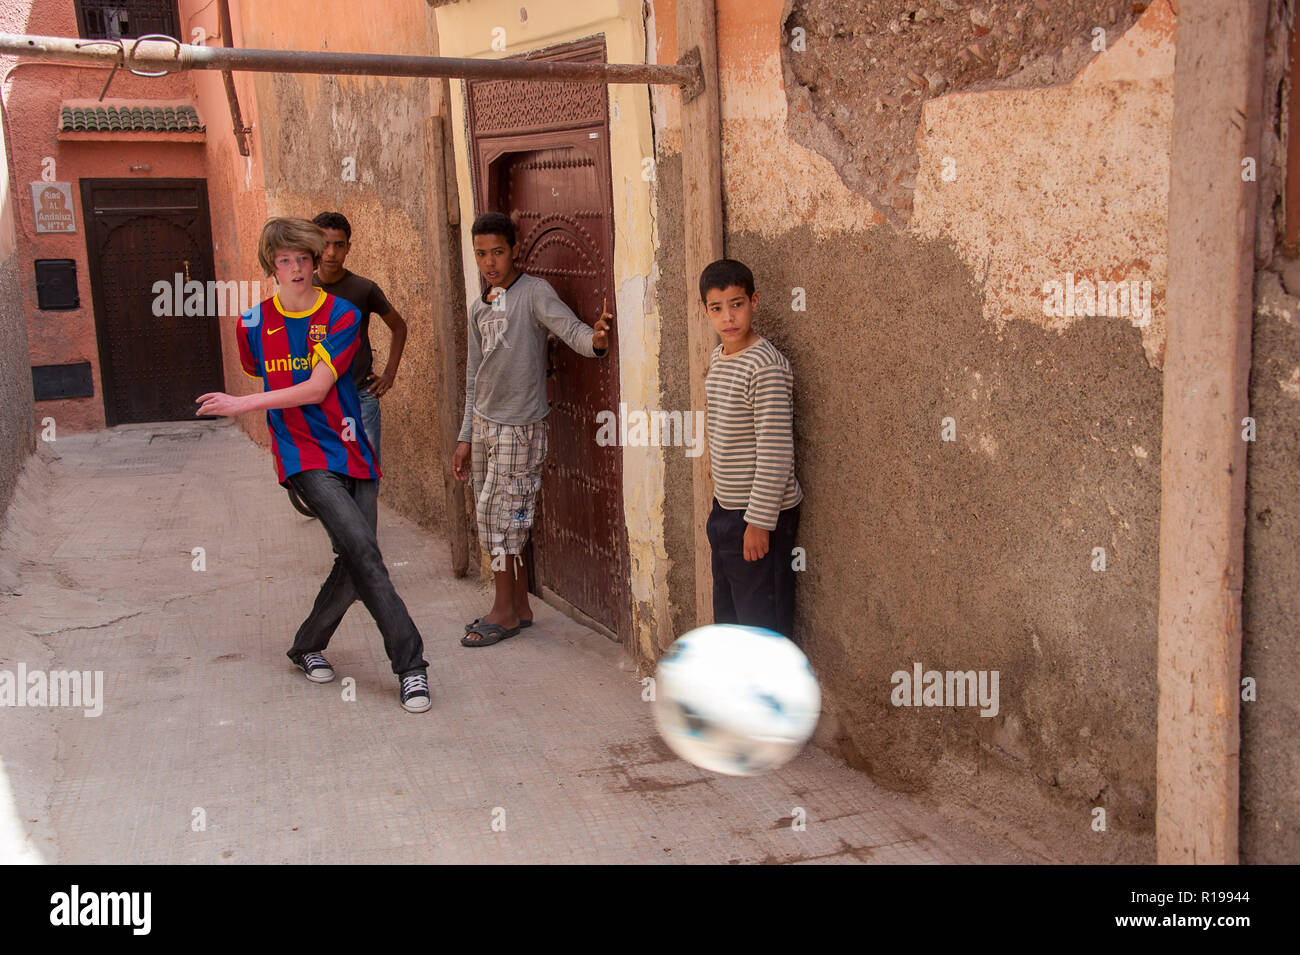 18-04-11. Marrakech, Marocco. Ragazzo inglese giocando a calcio con Morroccan ragazzi in un vicolo della medina. Foto © Simon Grosset / Q Fotografia Foto Stock